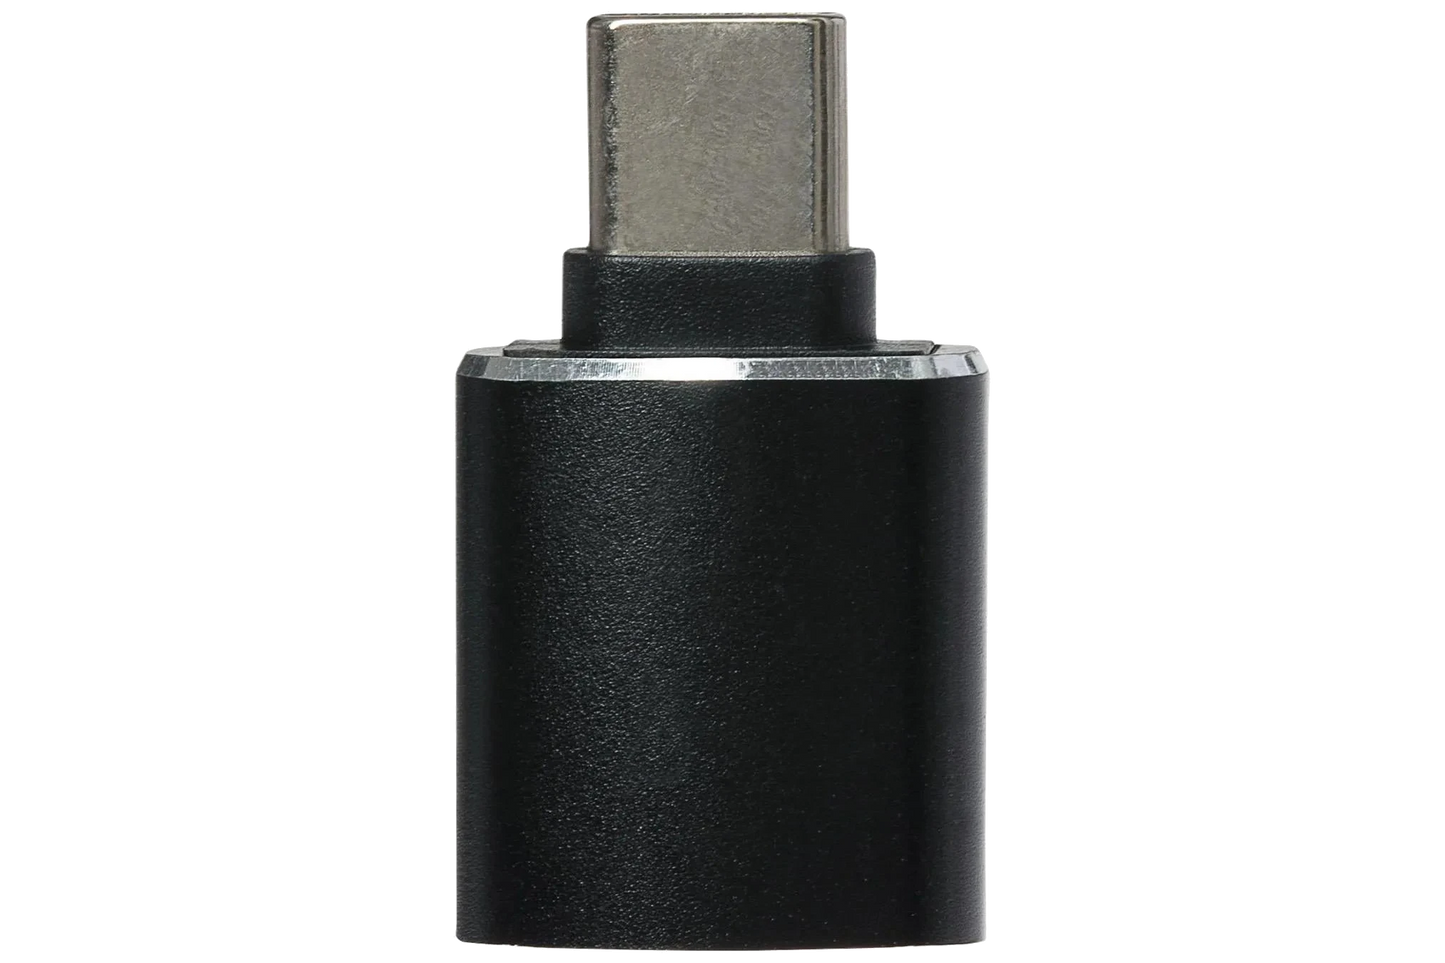 Nikkai USB-A 3.0 to USB-C Adapter - Black - Nikkai.co